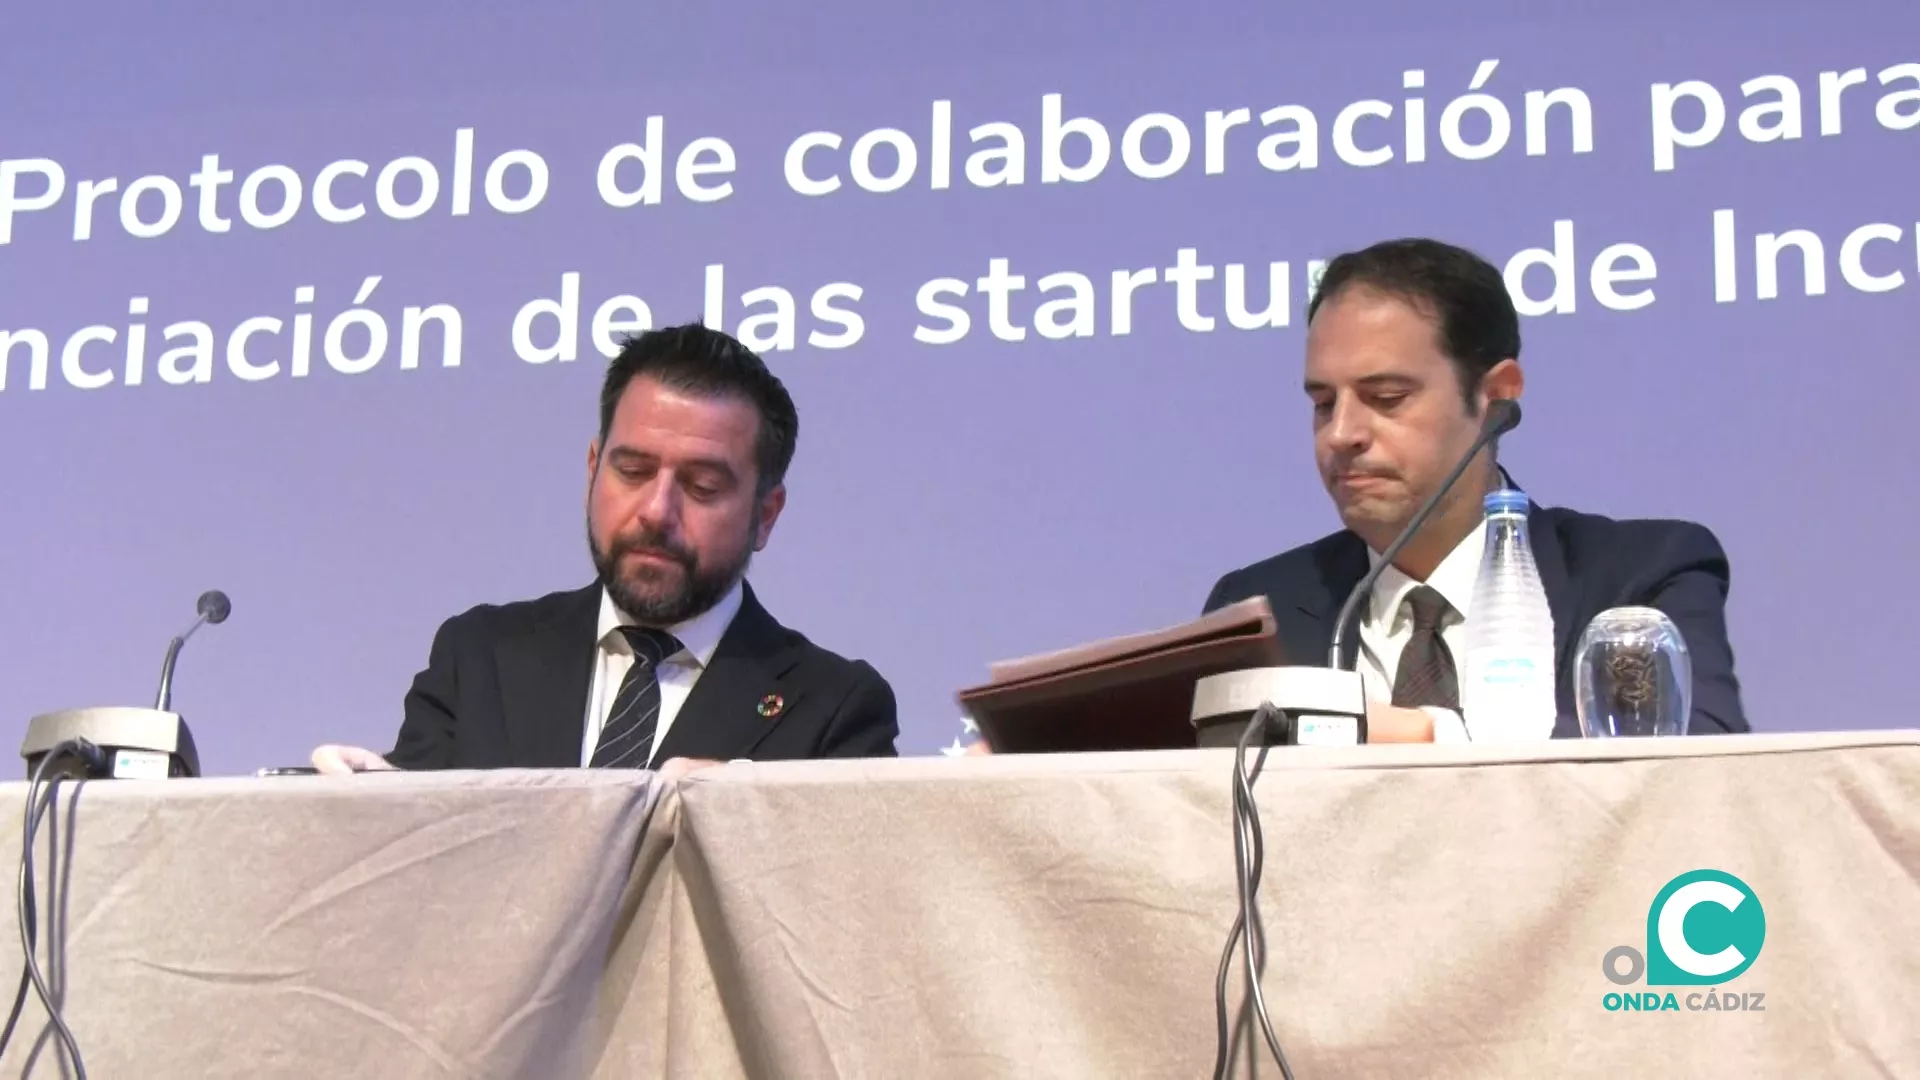 El delegado de la Zona Franca en Cádiz, Francisco González y el CEO de Orbyn Ricardo Ruipérez firmando el acuerdo en el Hotel Q Cádiz Bahía.